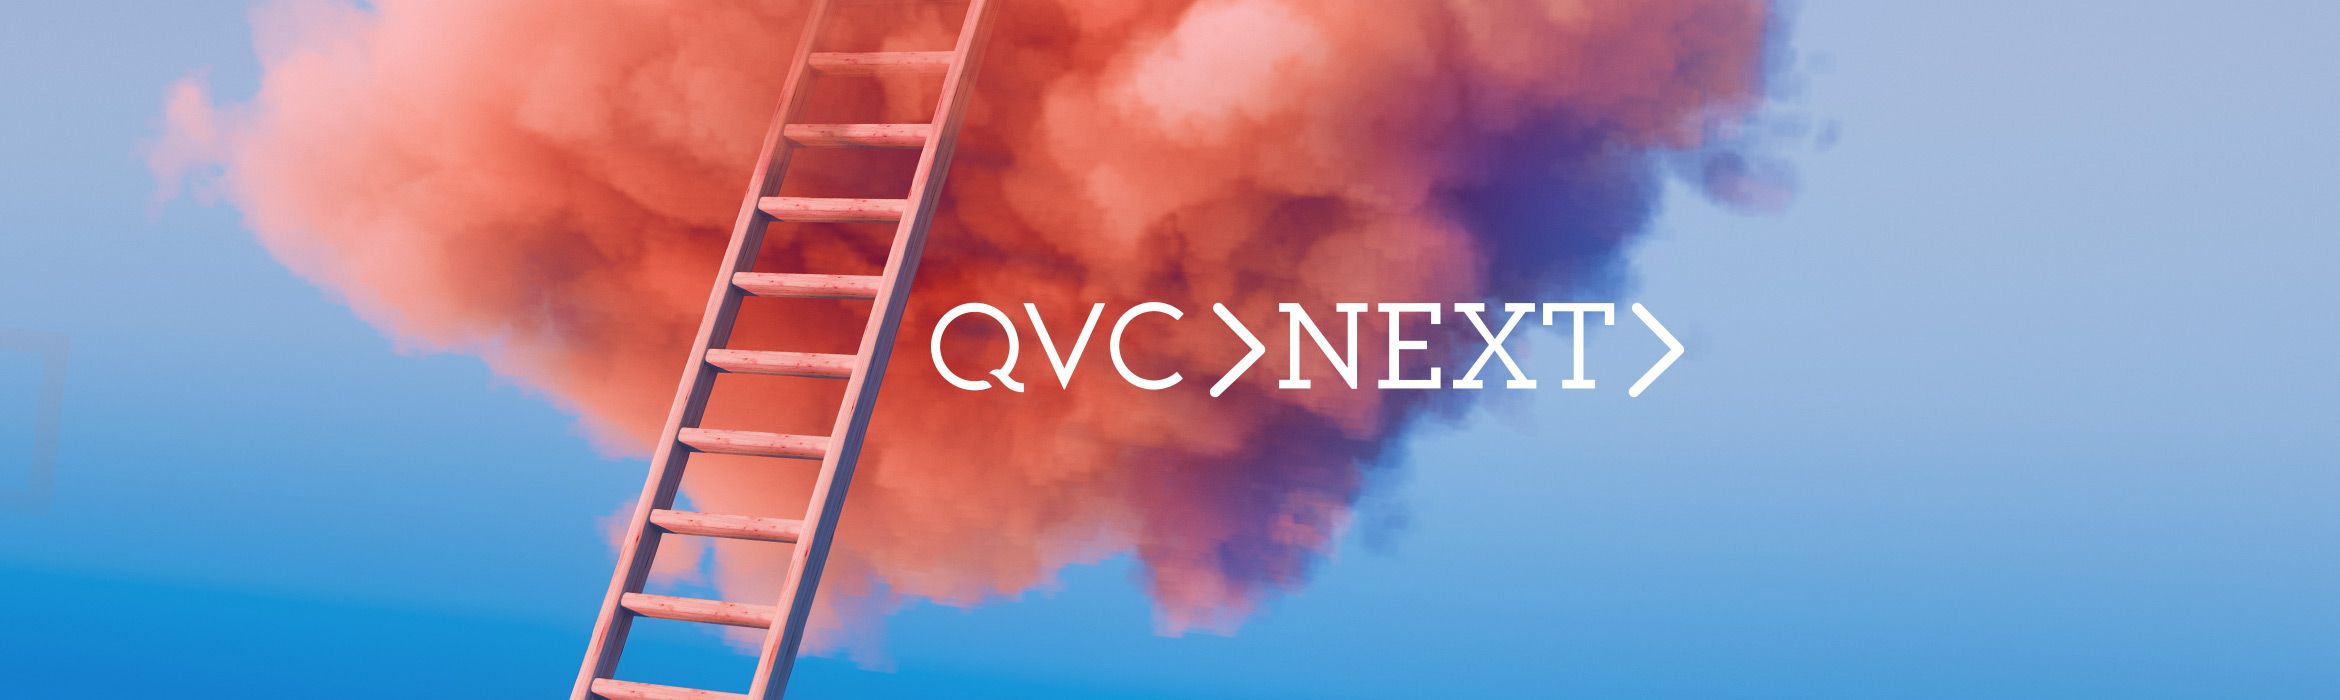 QVC NEXT Startup-Initiative